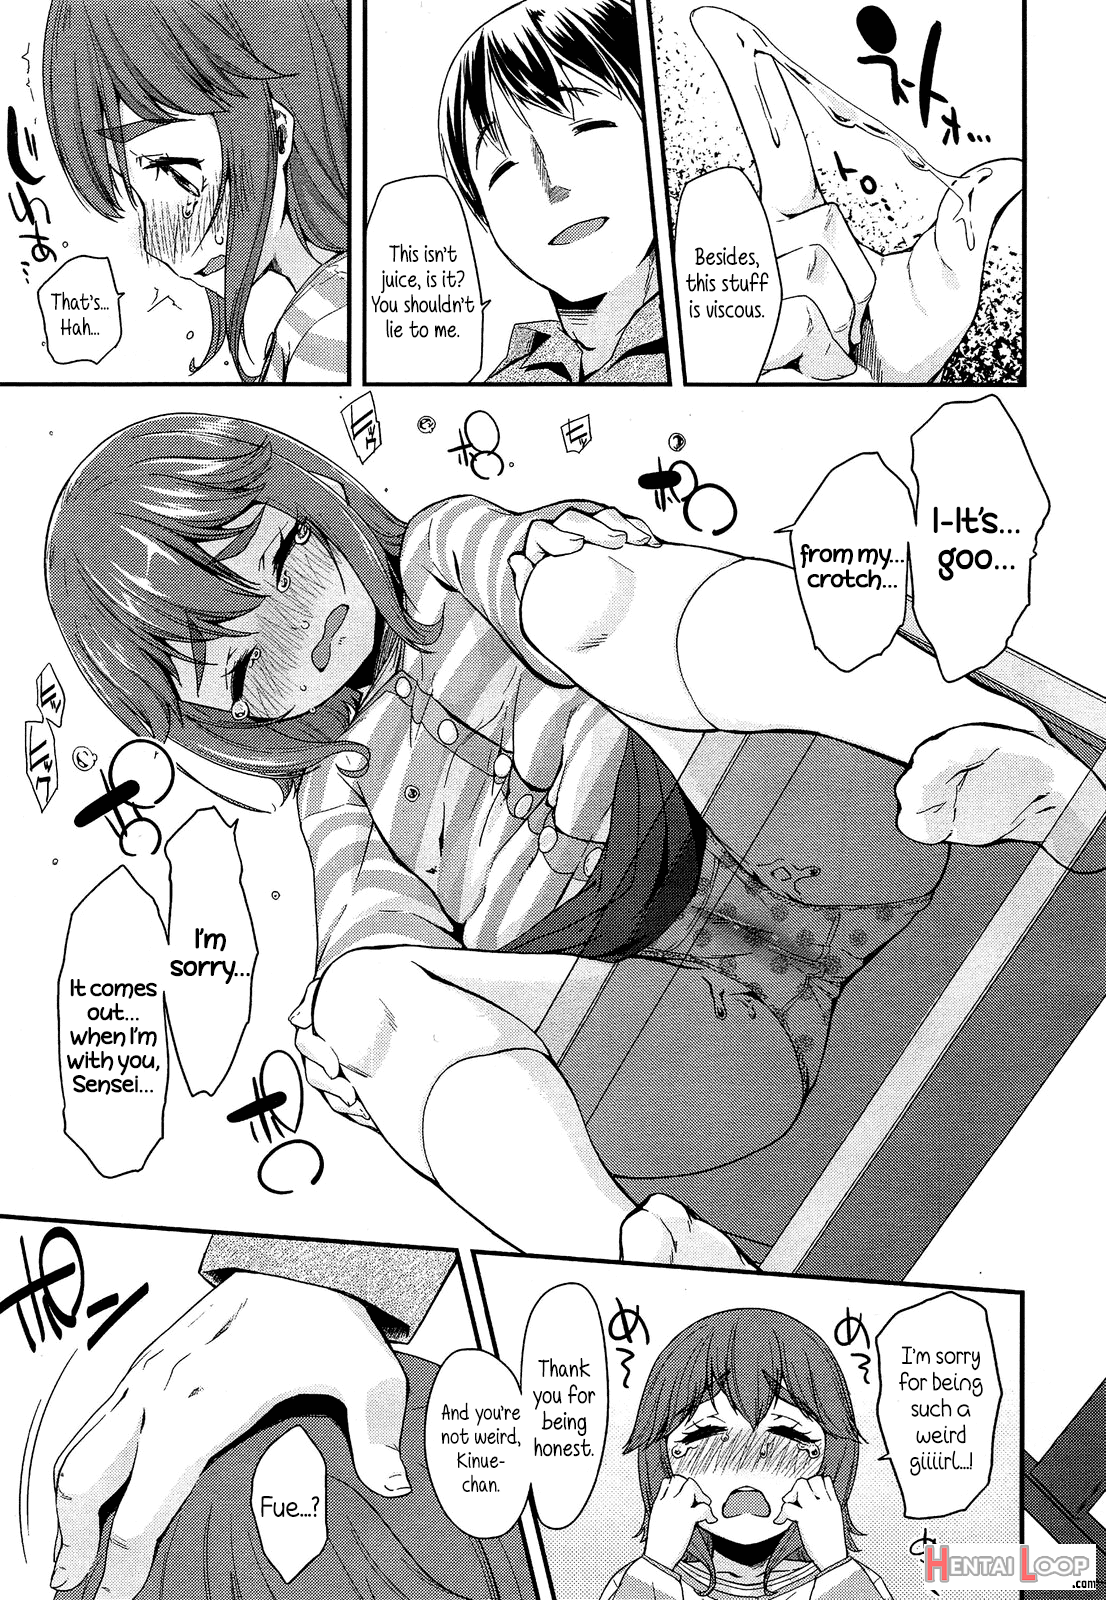 Watashi No Sensei page 5